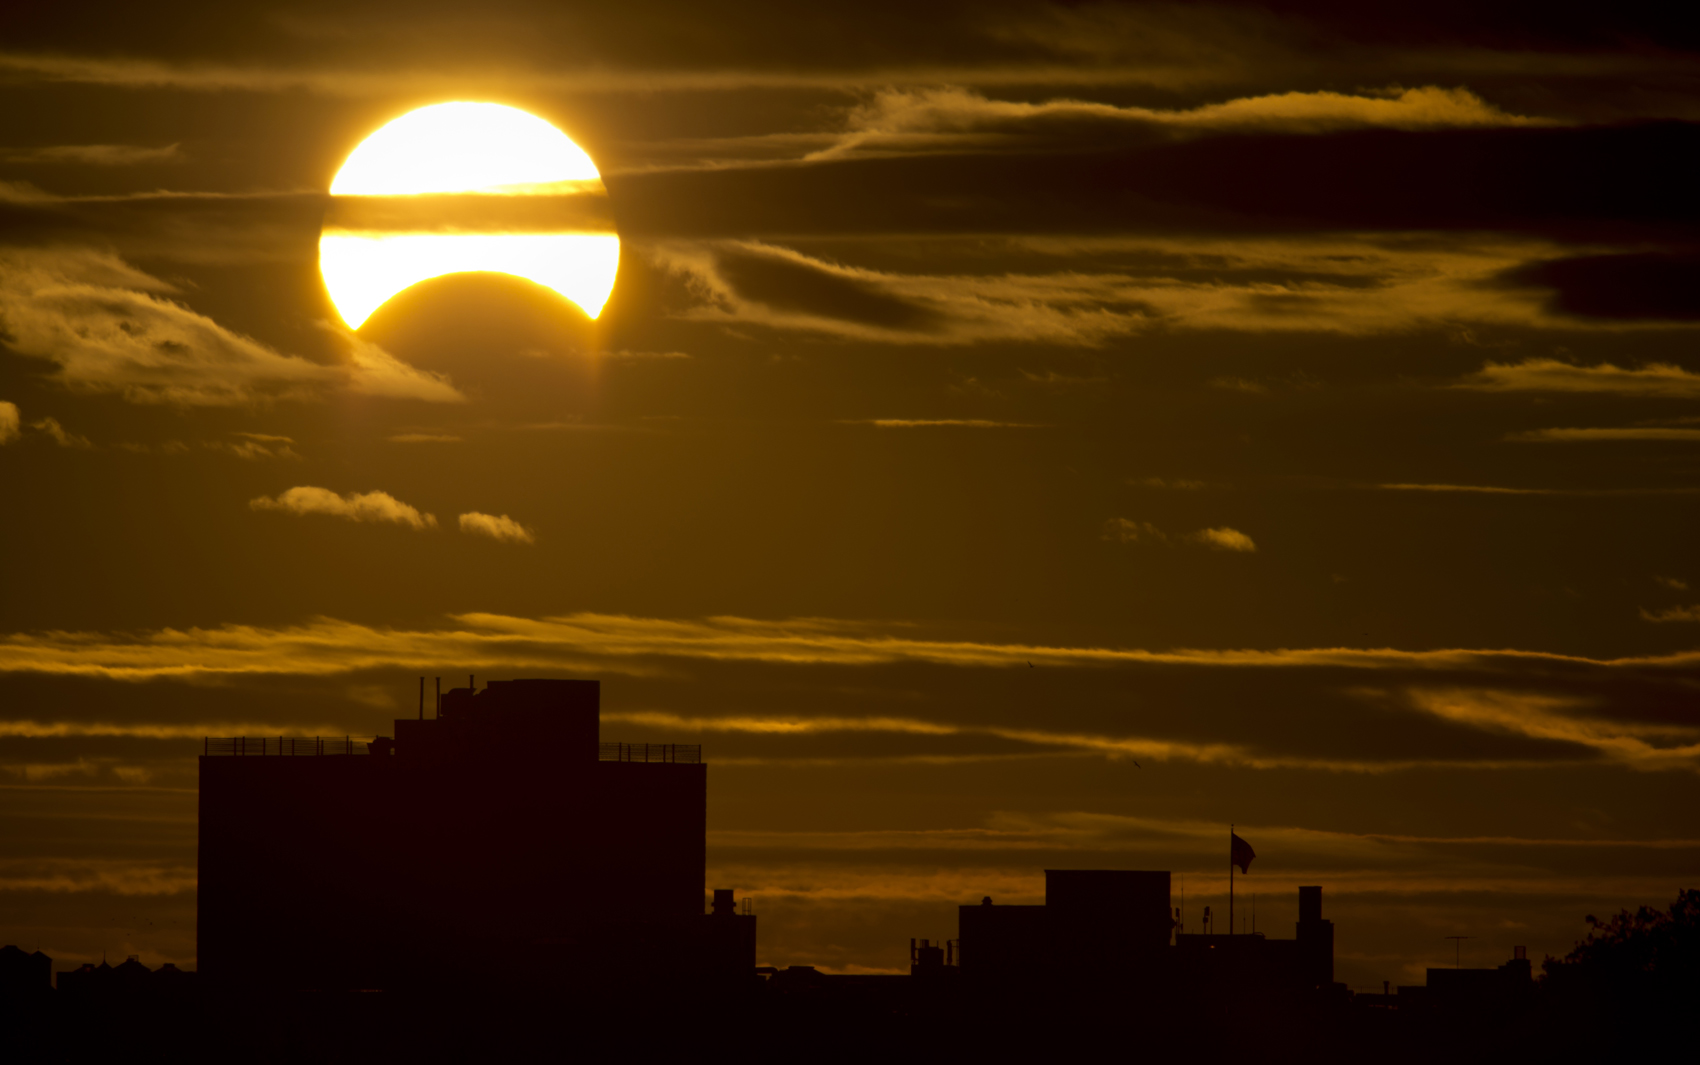 Eclipse solar foi visto neste domingo em Nova York, nos Estados Unidos.